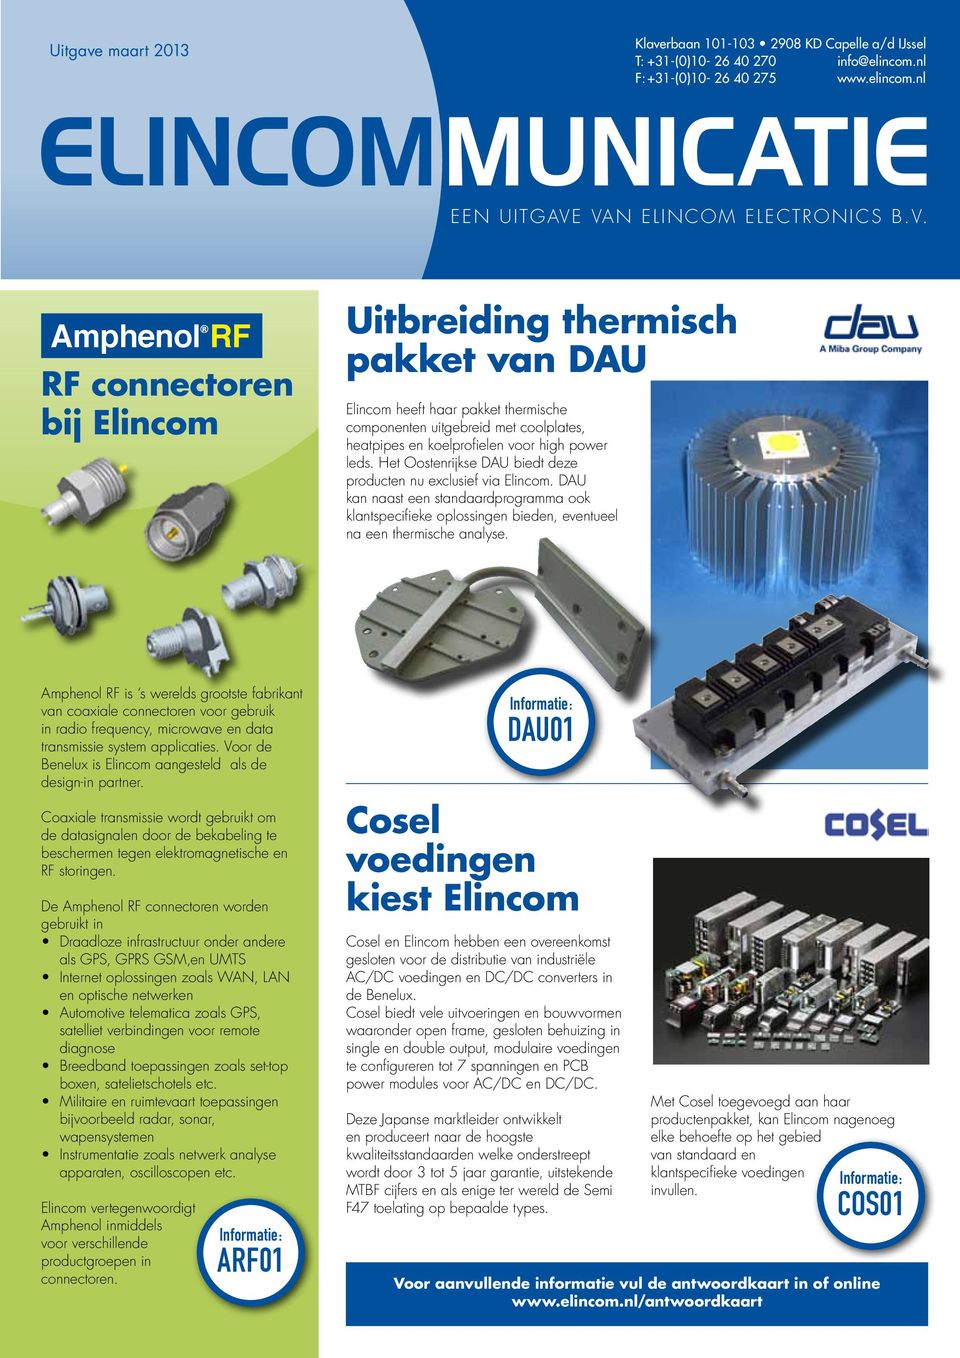 Het Oostenrijkse DAU biedt deze producten nu exclusief via Elincom. DAU kan naast een standaardprogramma ook klantspecifieke oplossingen bieden, eventueel na een thermische analyse.